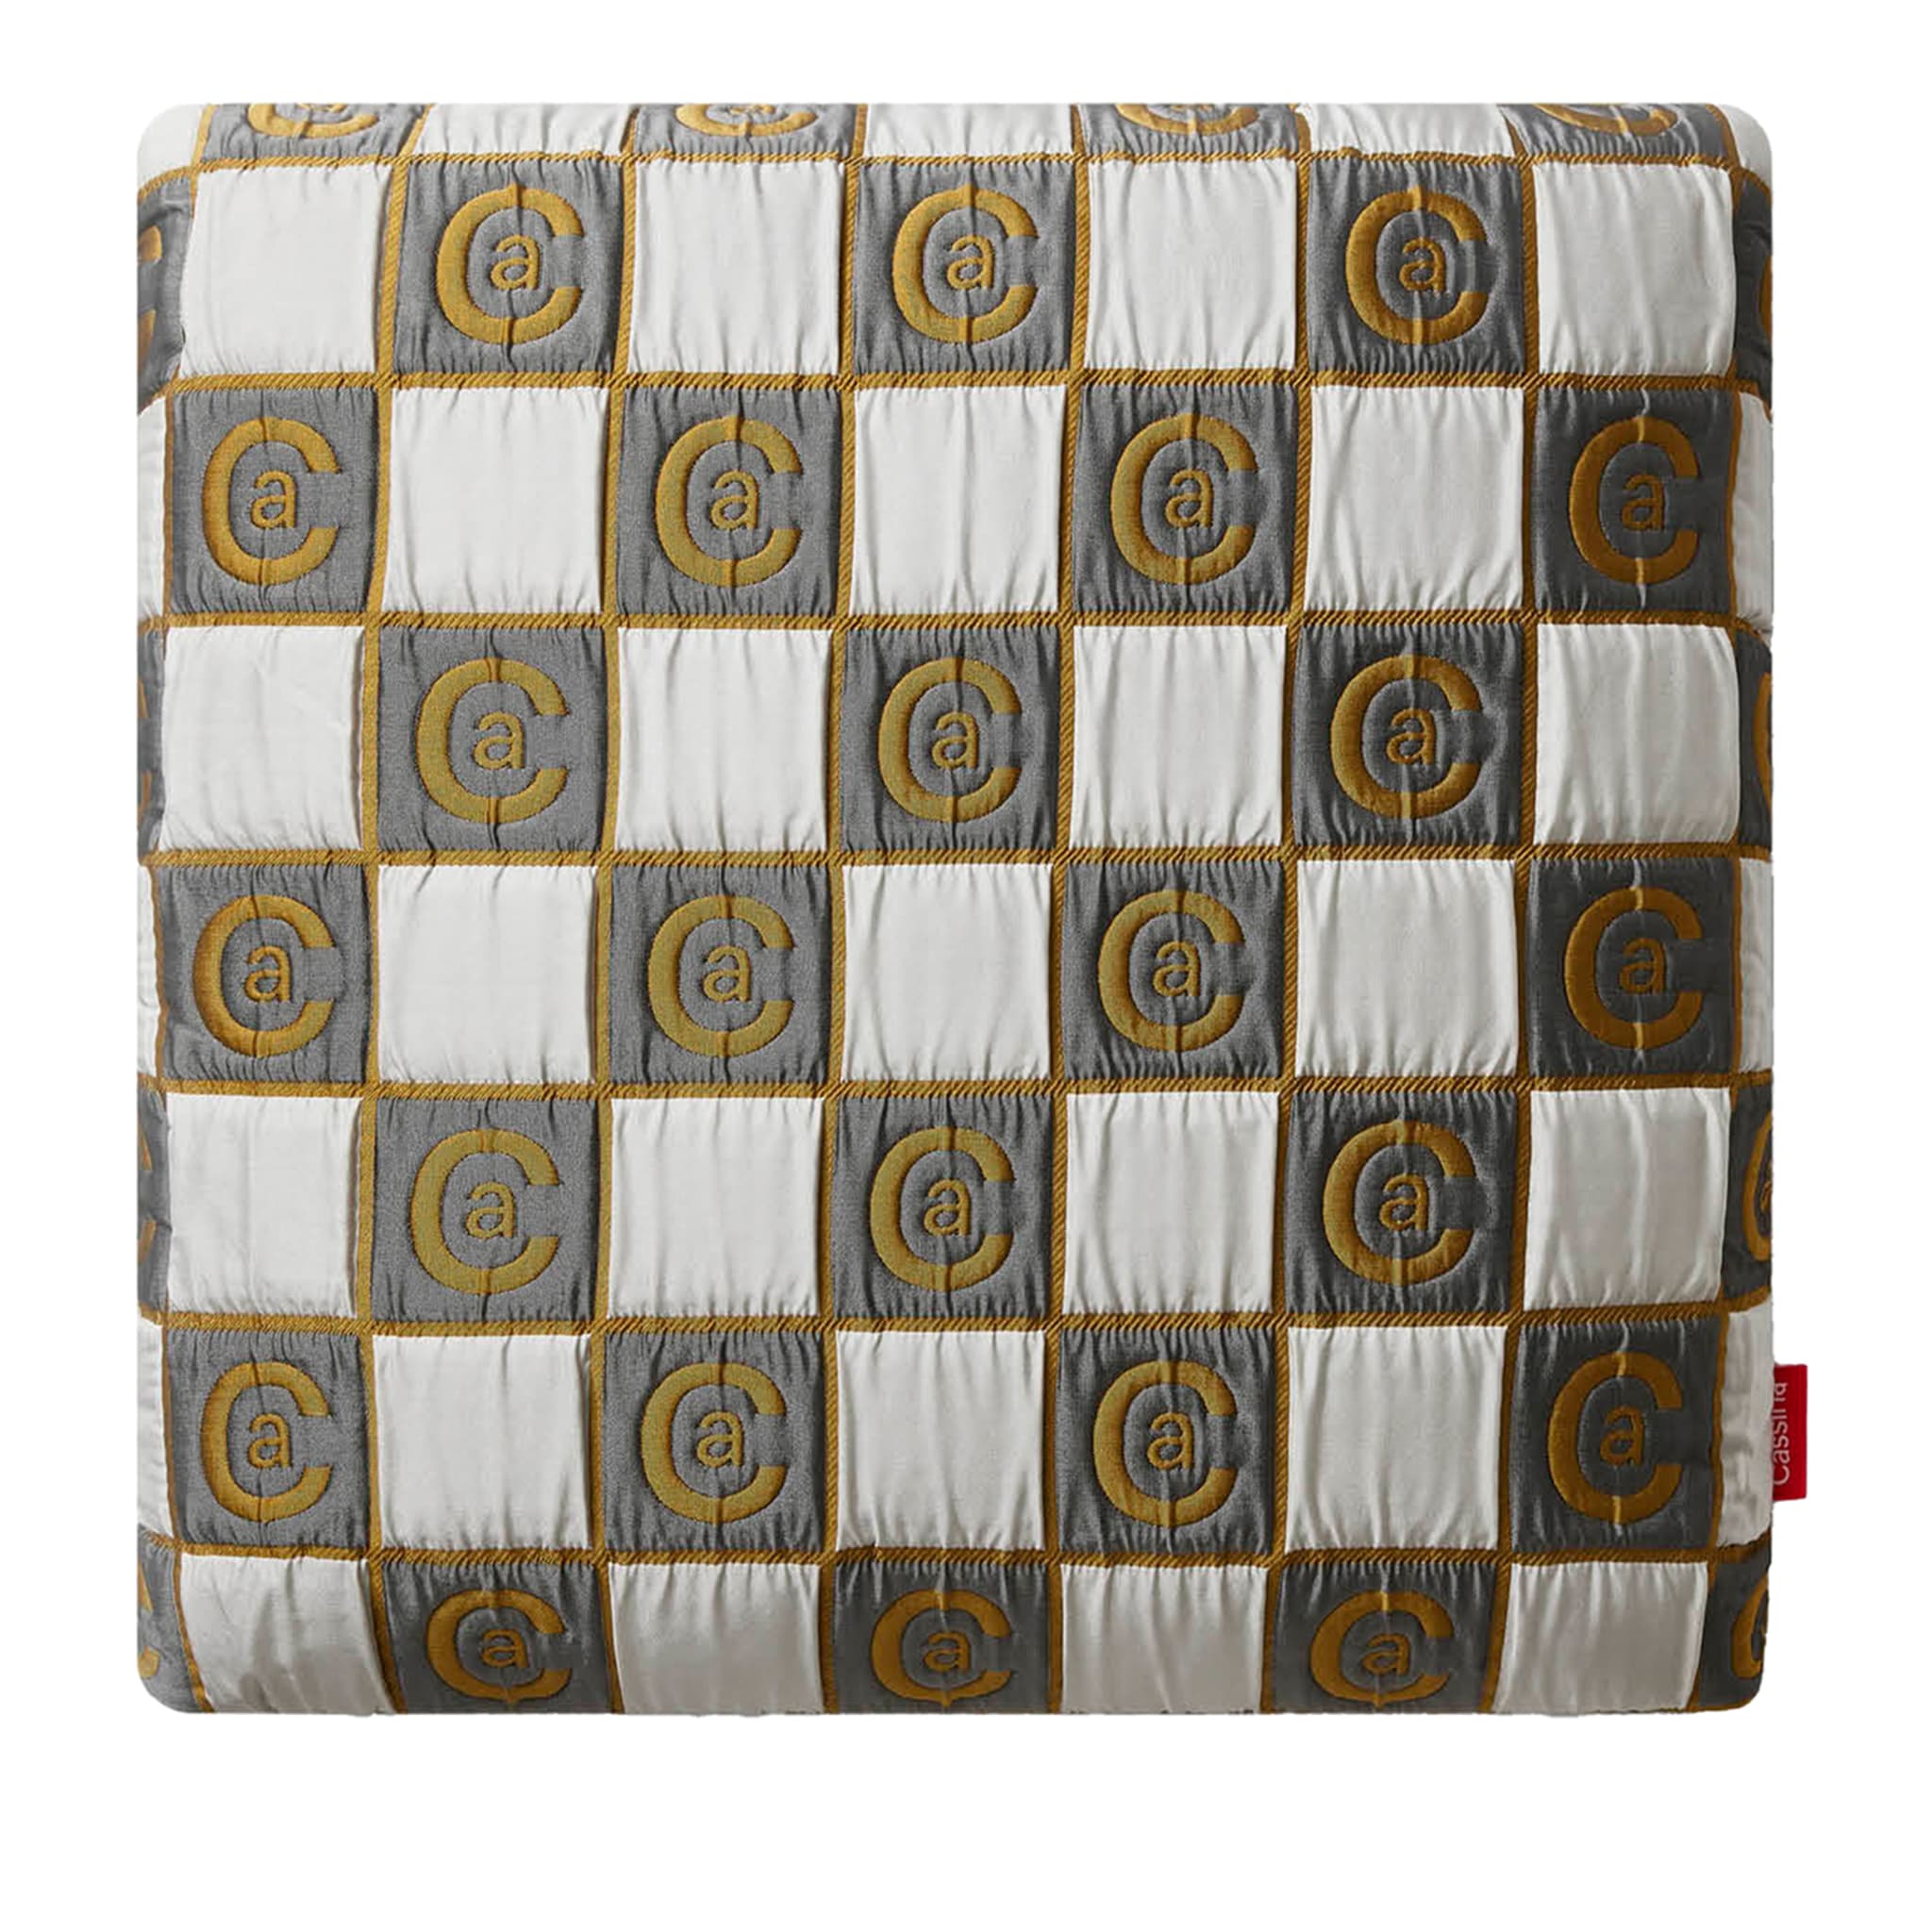 Coussins décoratifs en forme de cadre de jeu d'échecs #1 - Vue principale